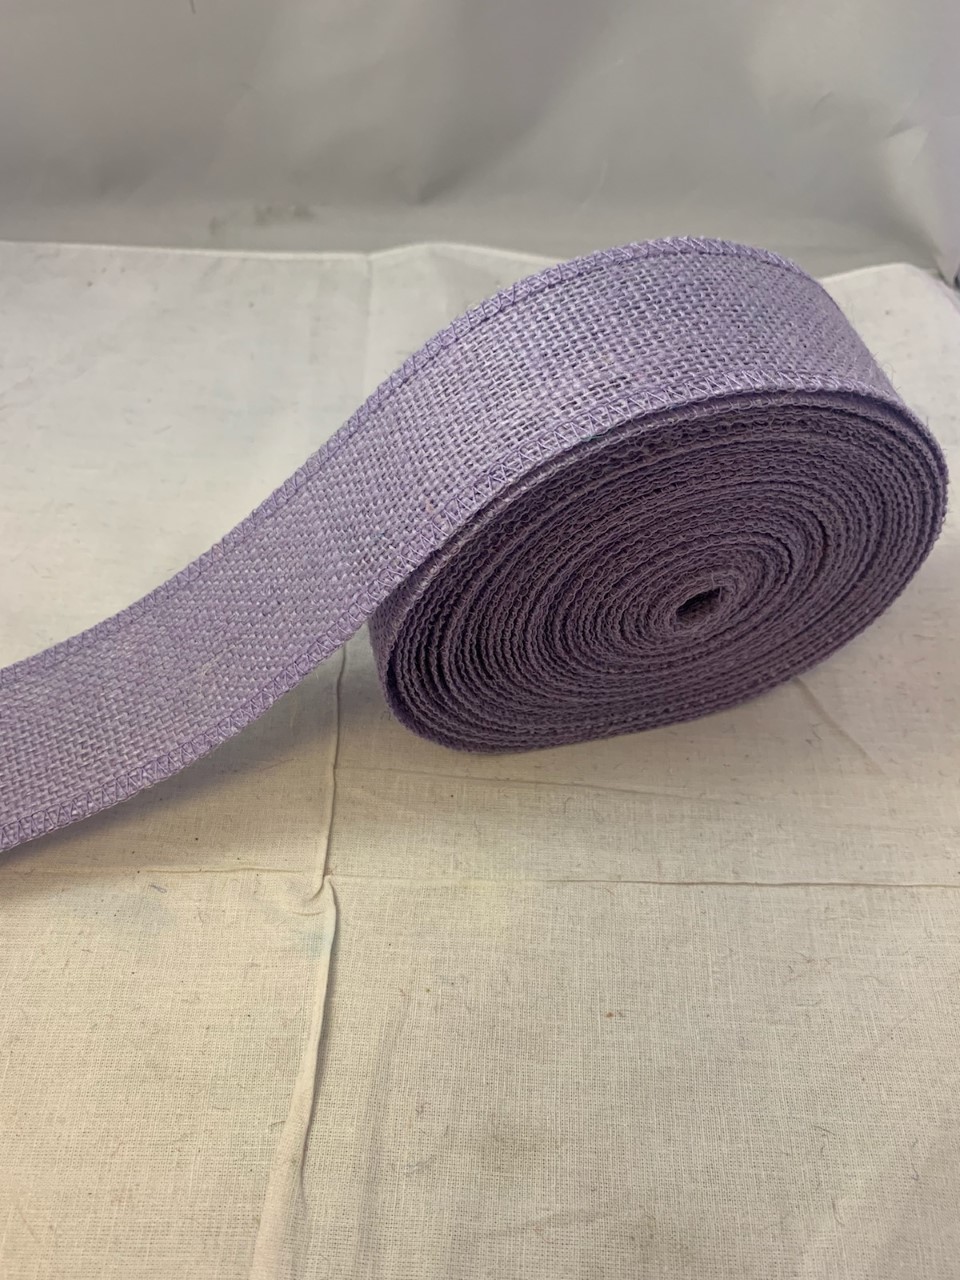 2" Violet Burlap Ribbon - 10 Yards (Serged) Made in USA